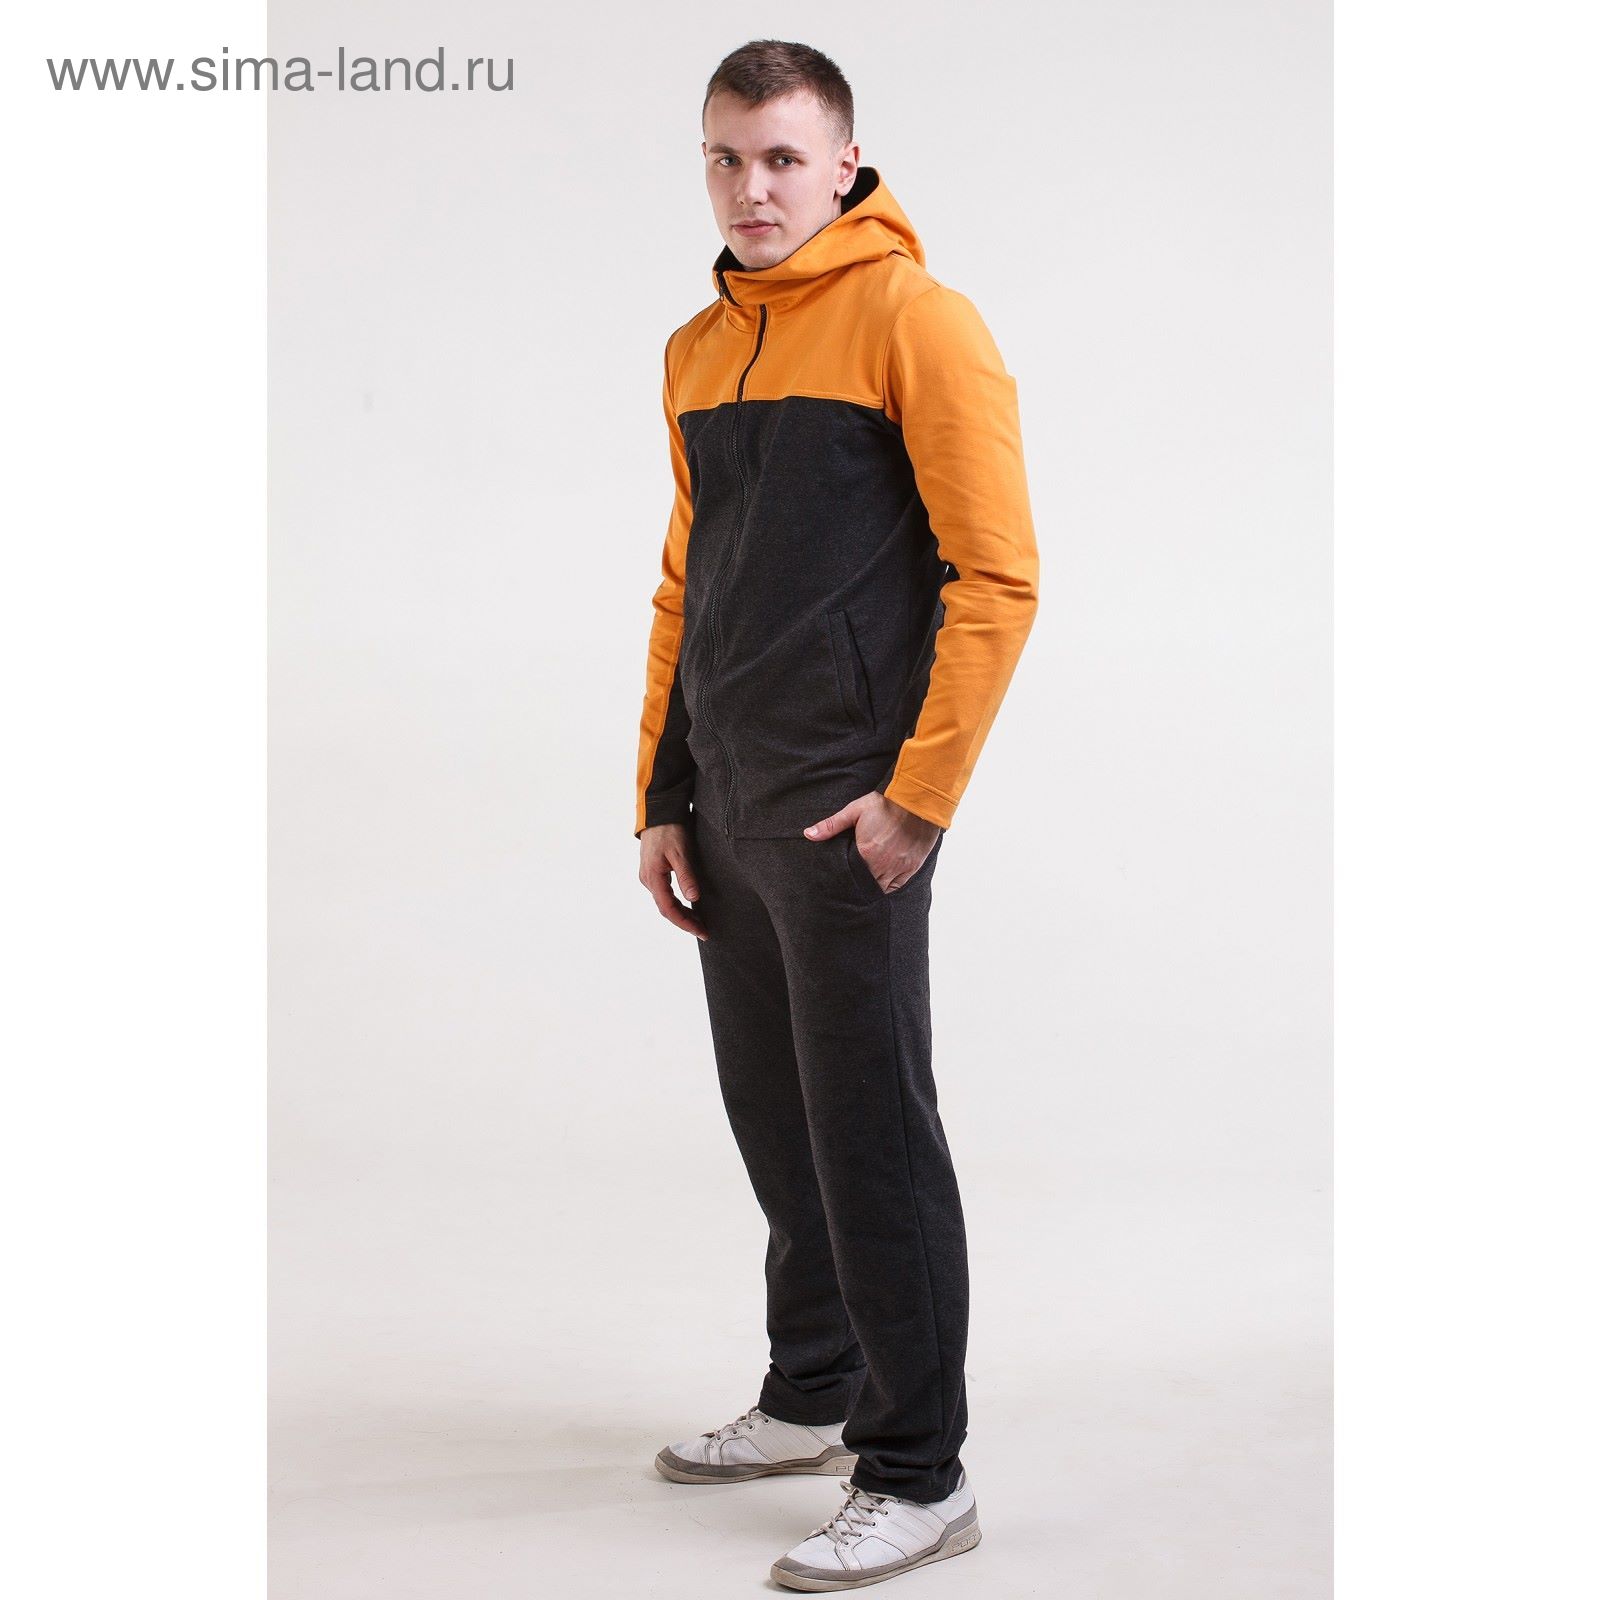 Комплект мужской (куртка+брюки), размер 48, цвет антрацит+горчичный (арт. М-759-05)